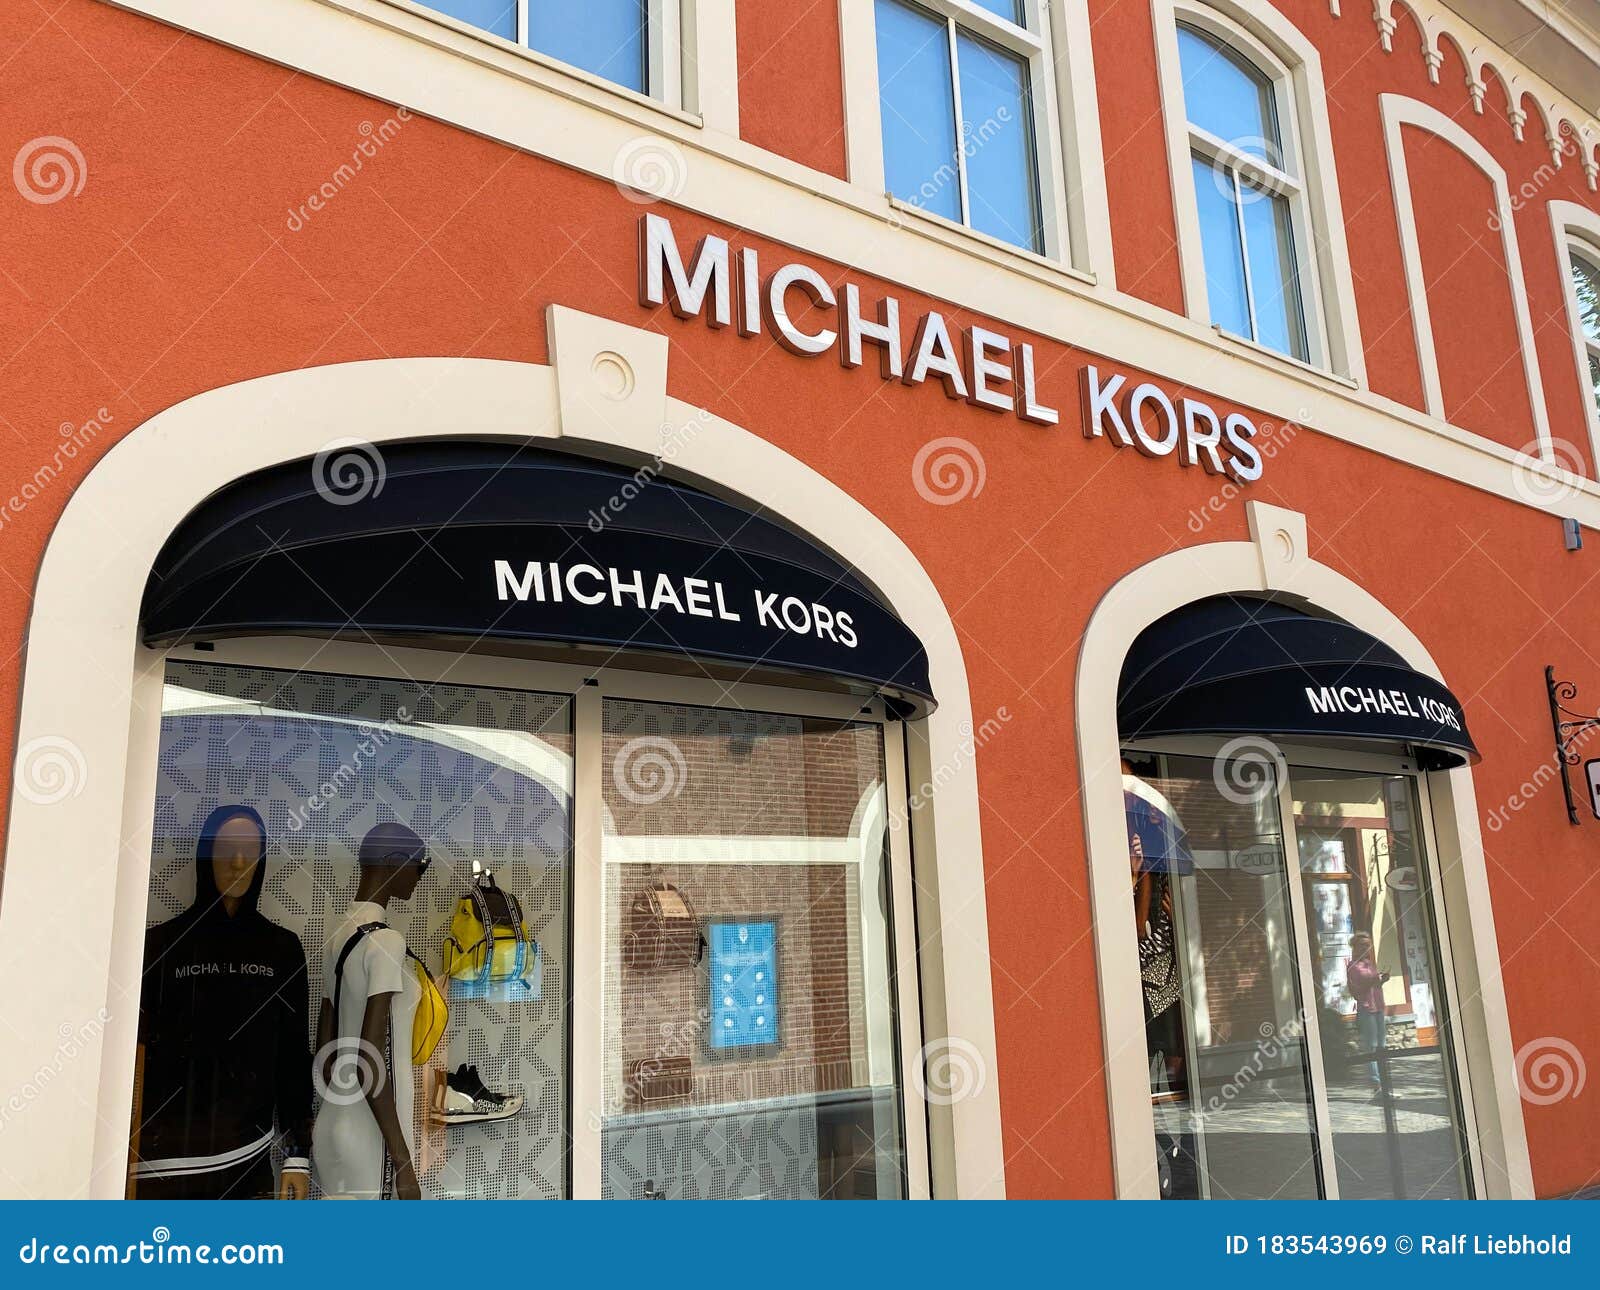 Micheal Kors opent tweede winkel in Nederland  Beau Monde